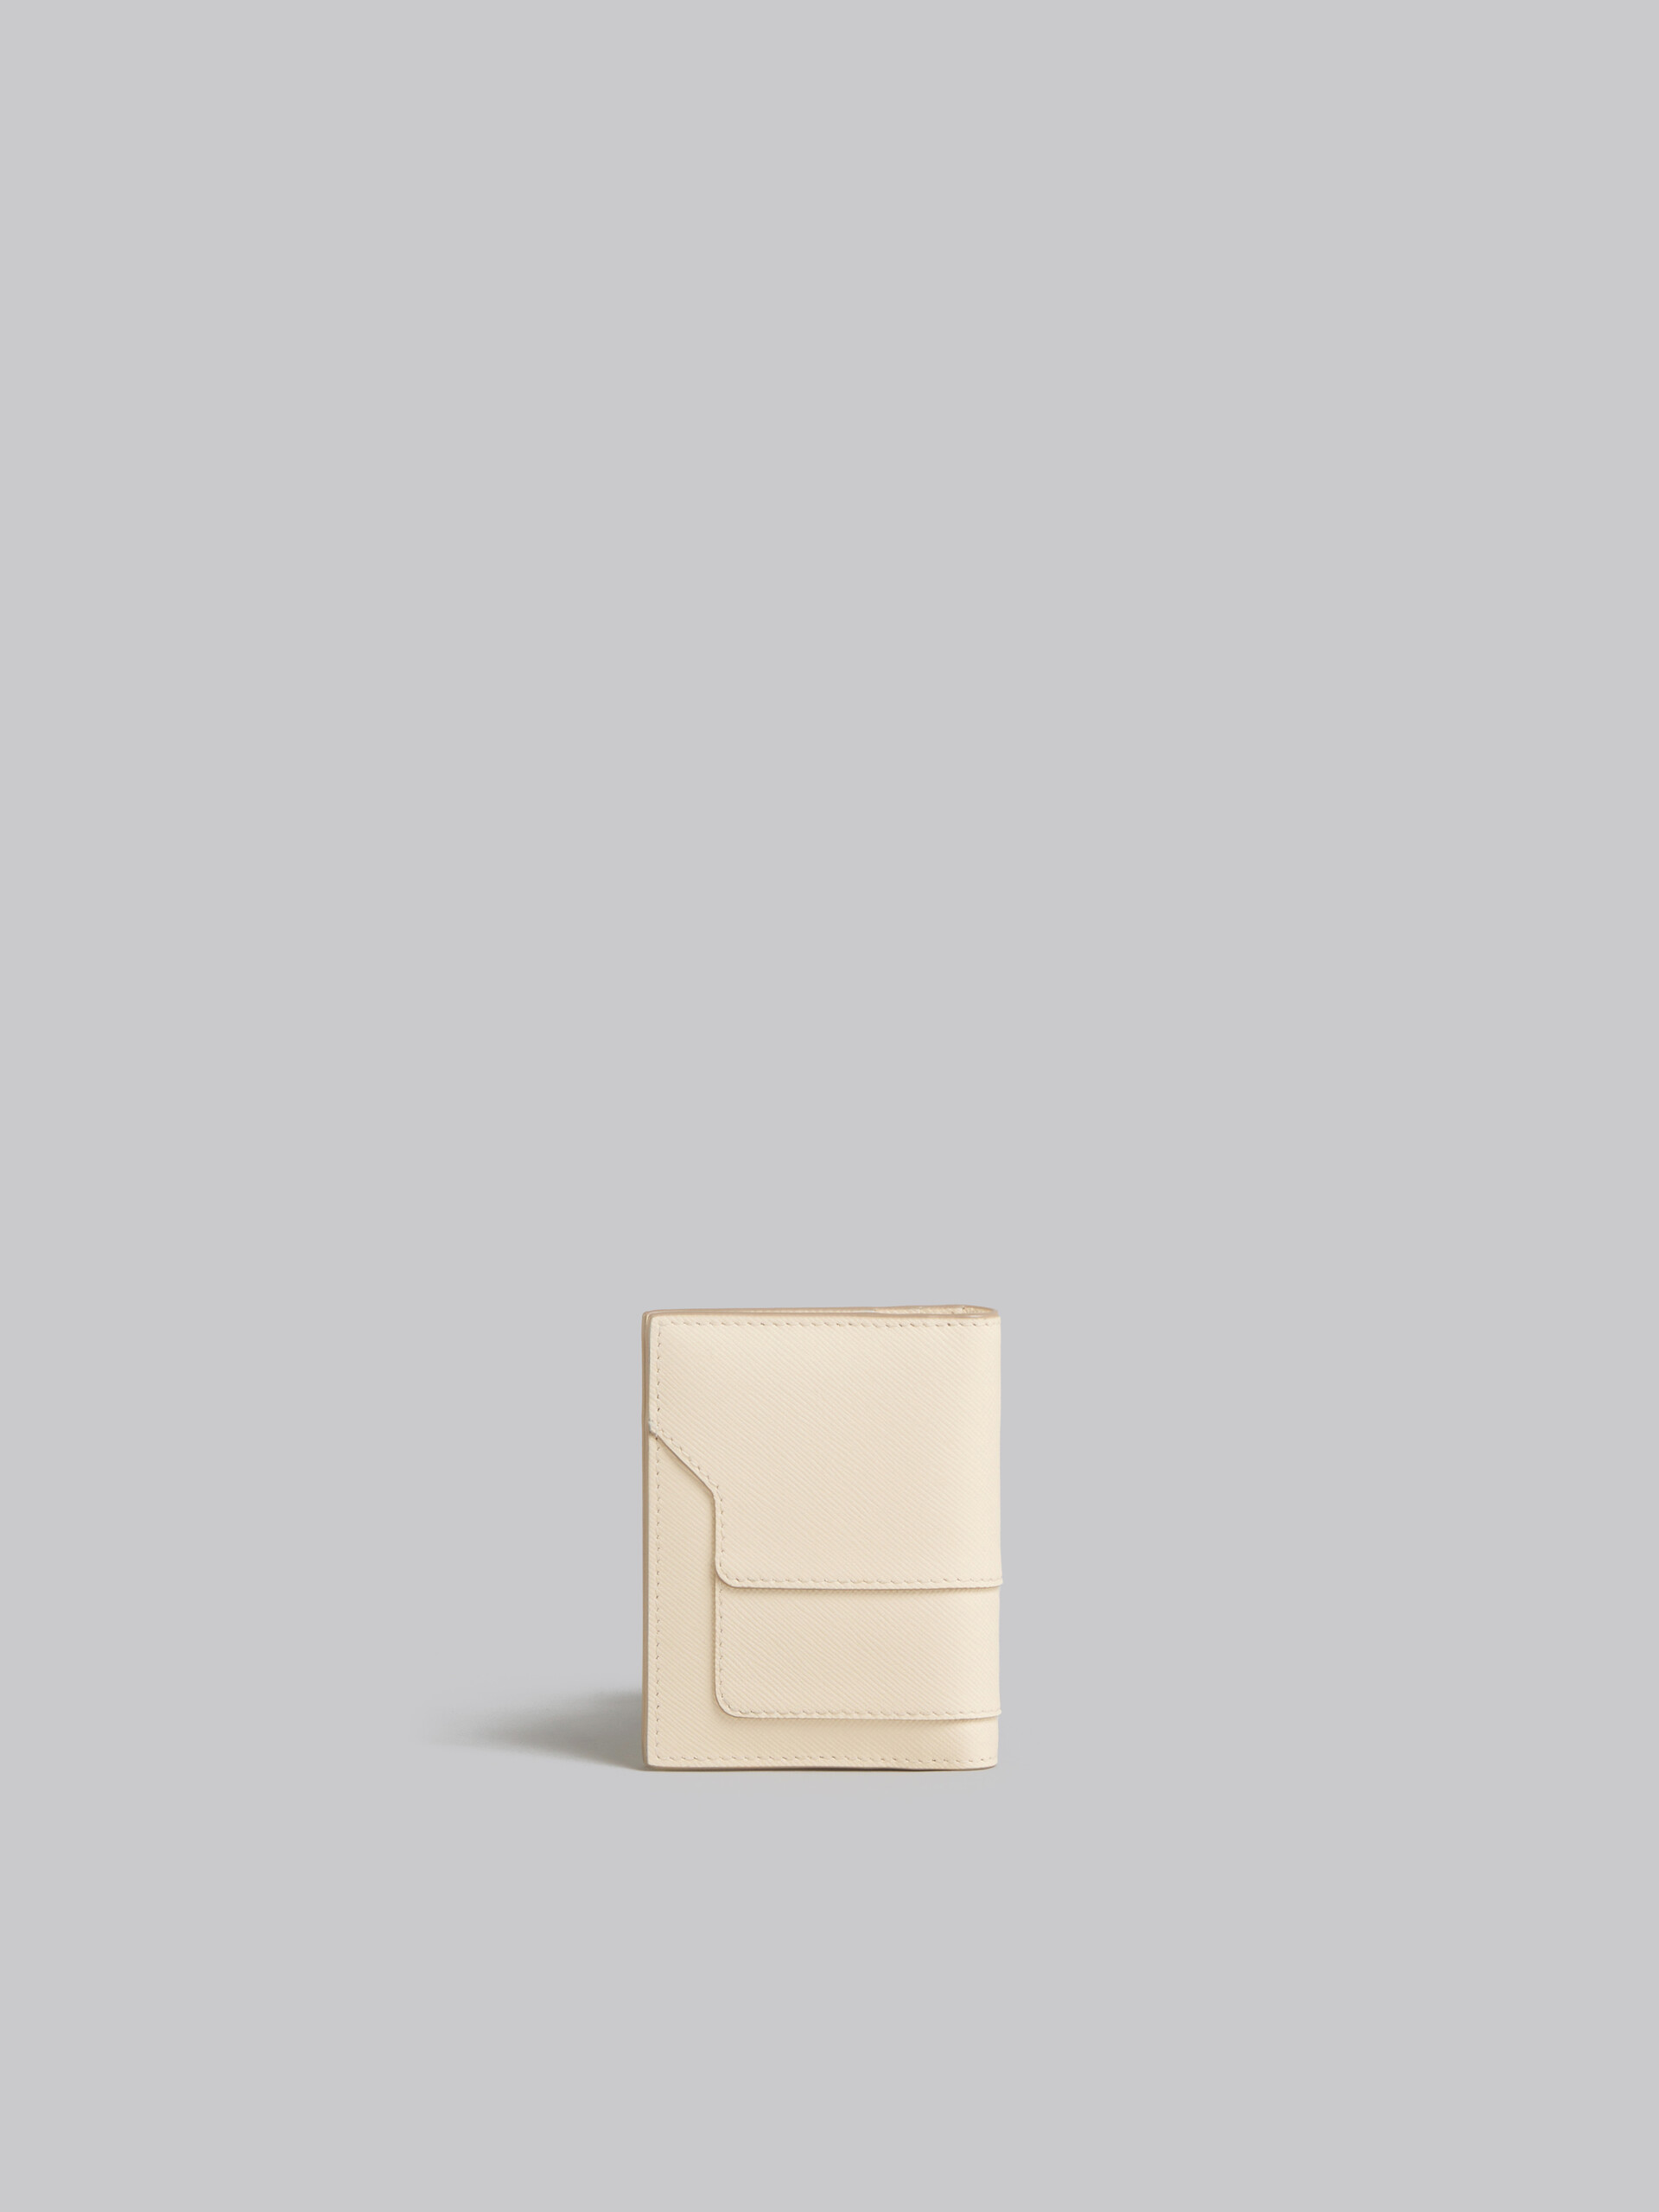 ブラック サフィアーノレザー製カードボルダー - 財布 - Image 3